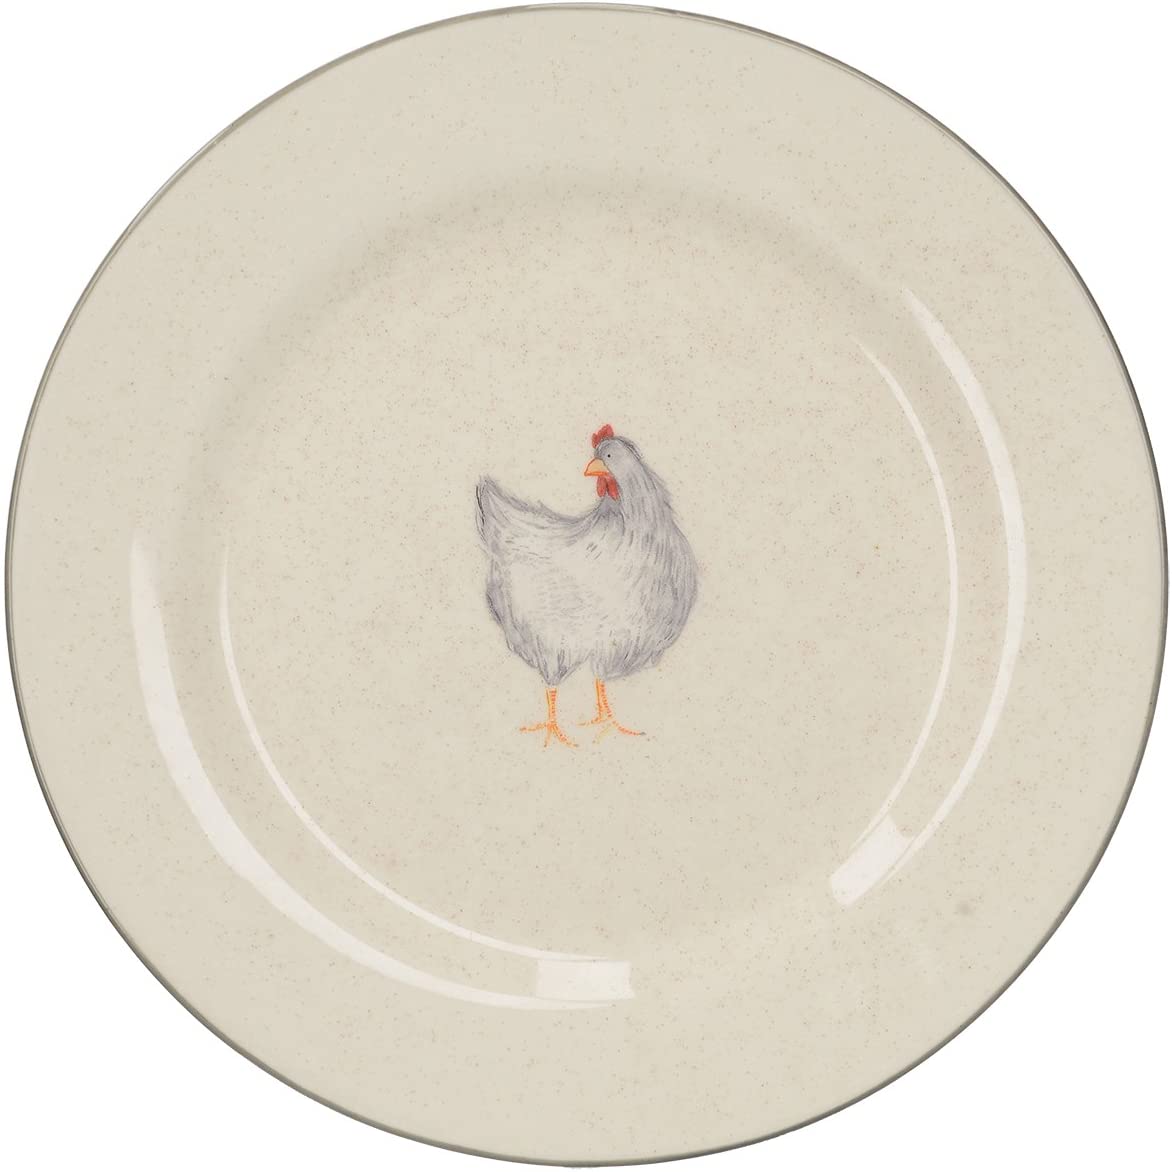 Creative Tops Ceramic Chicken Side Plate, Multi Colour, 20 x 20 x 2 cm